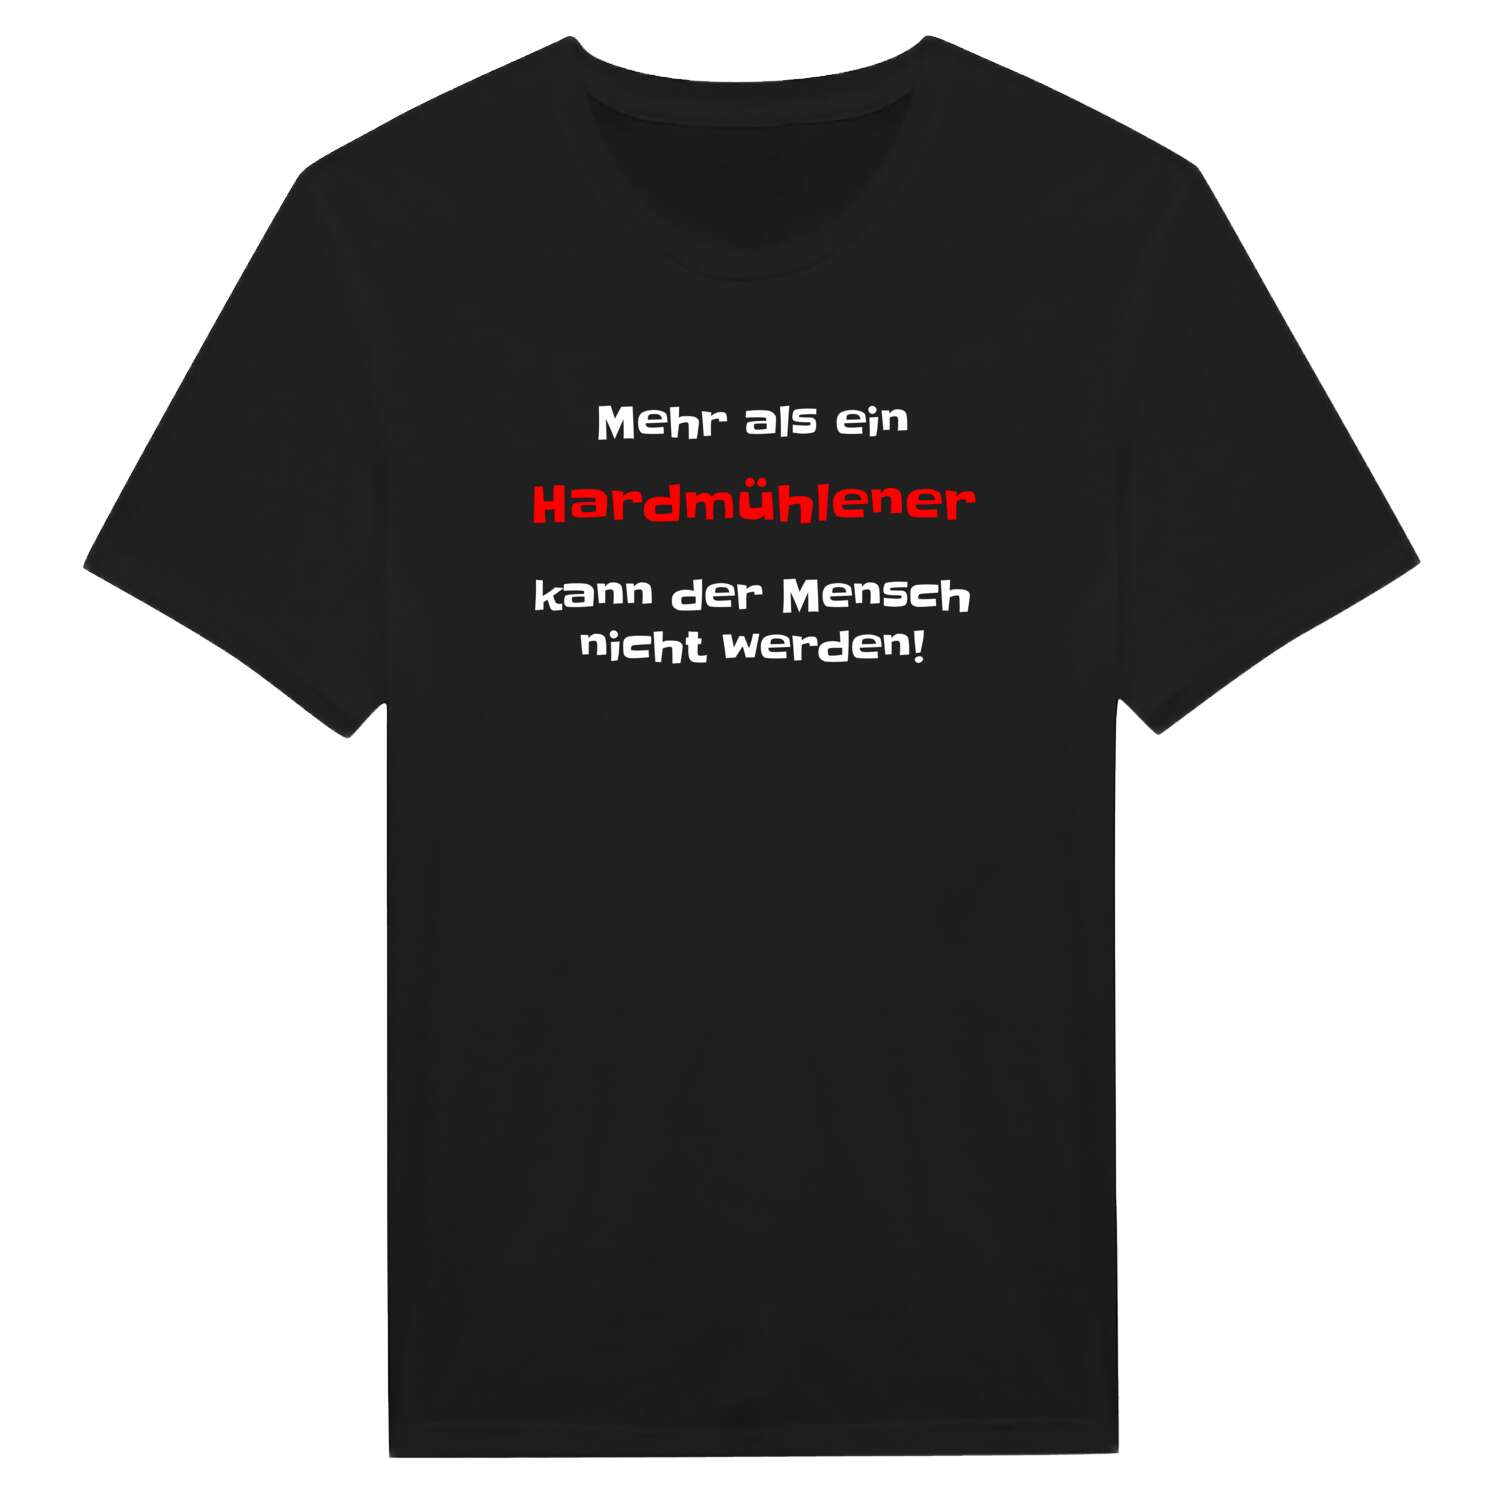 Hardmühle T-Shirt »Mehr als ein«